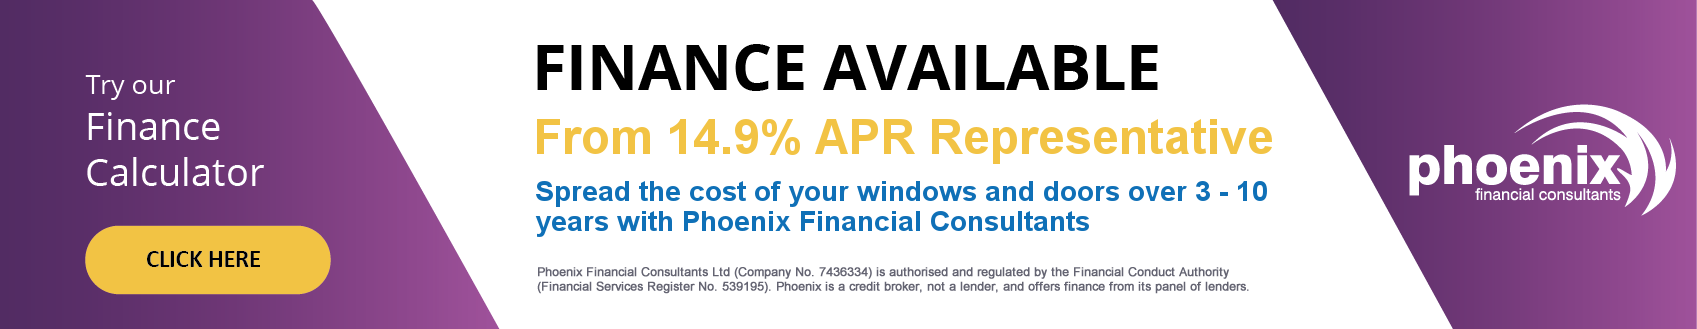 phoenix window and doors finance options